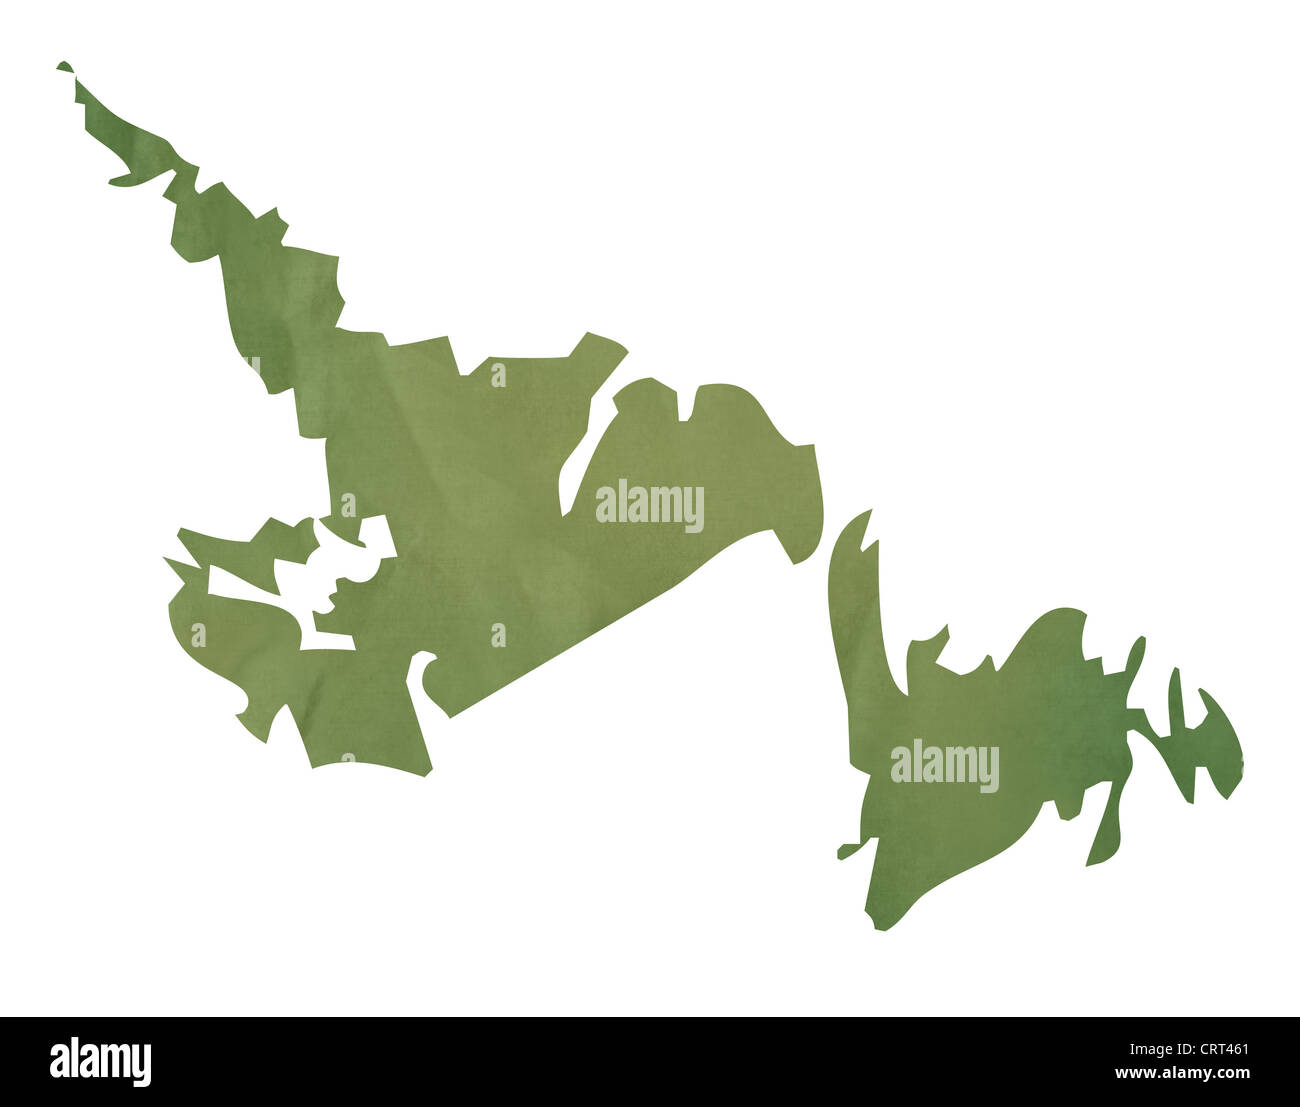 Terre-neuve province du Canada Carte de l'ancien papier vert isolé sur fond blanc. Banque D'Images